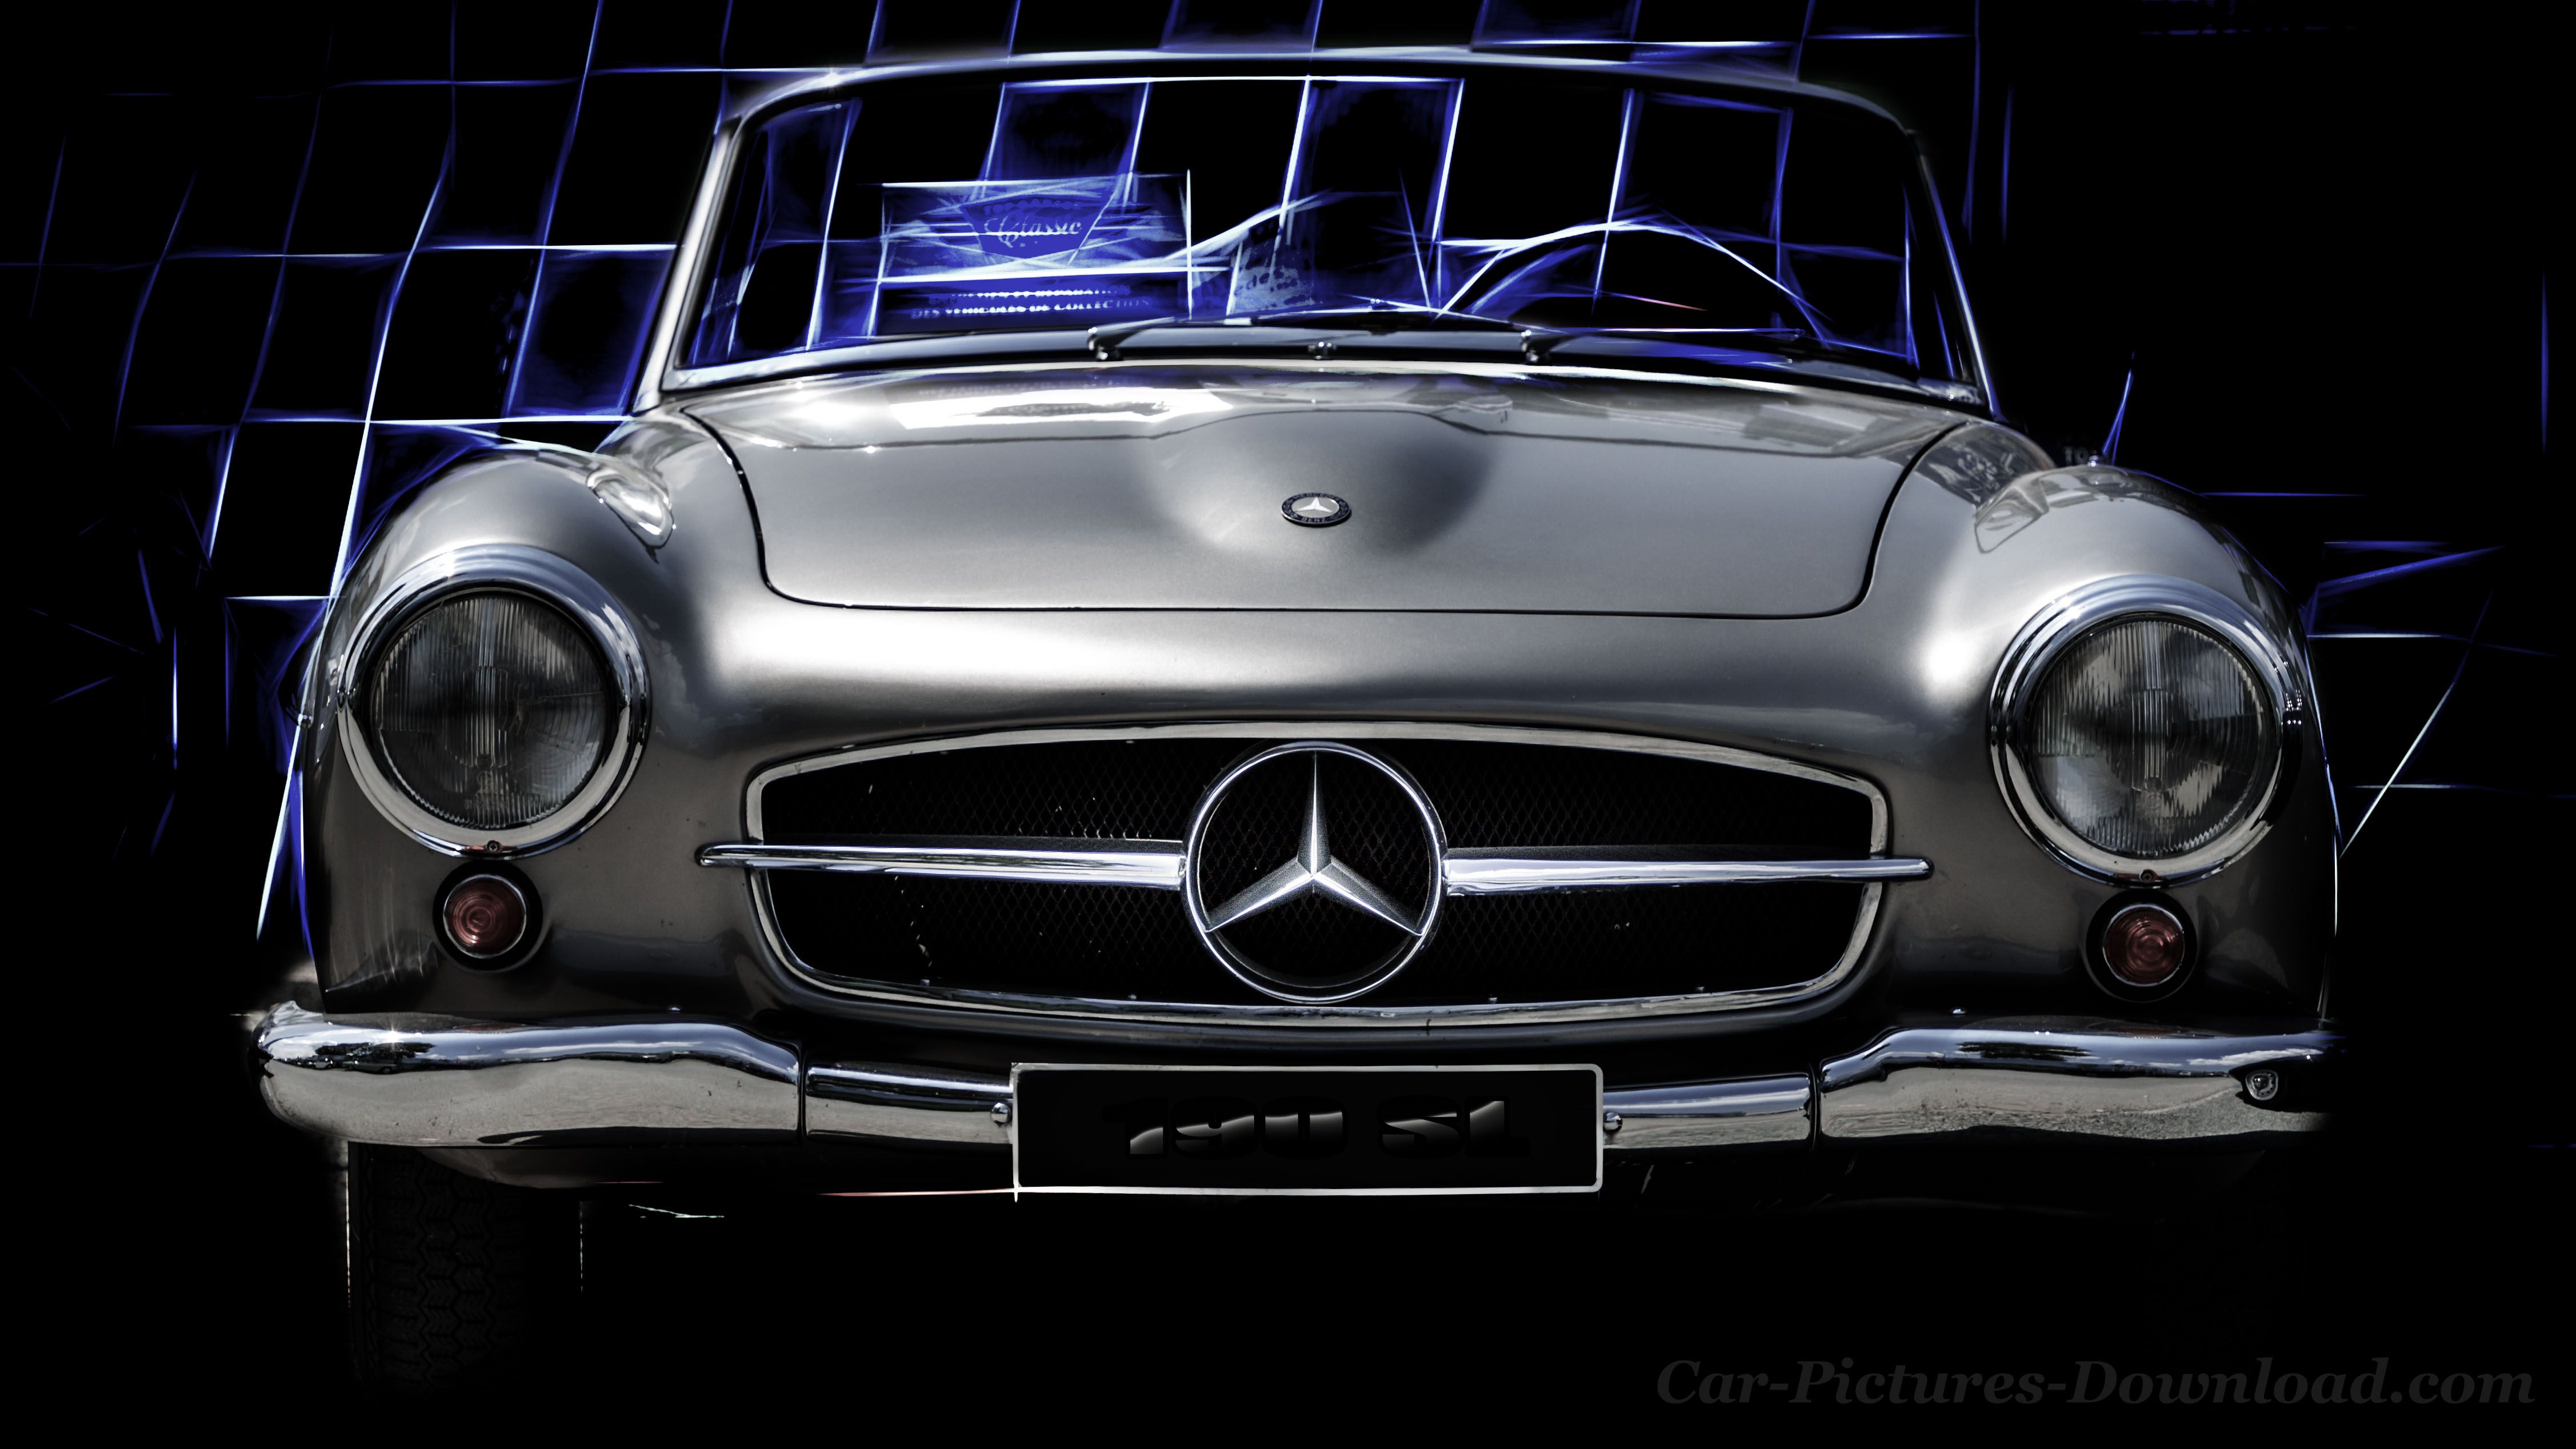 Wallpaper Mercedes Car Image